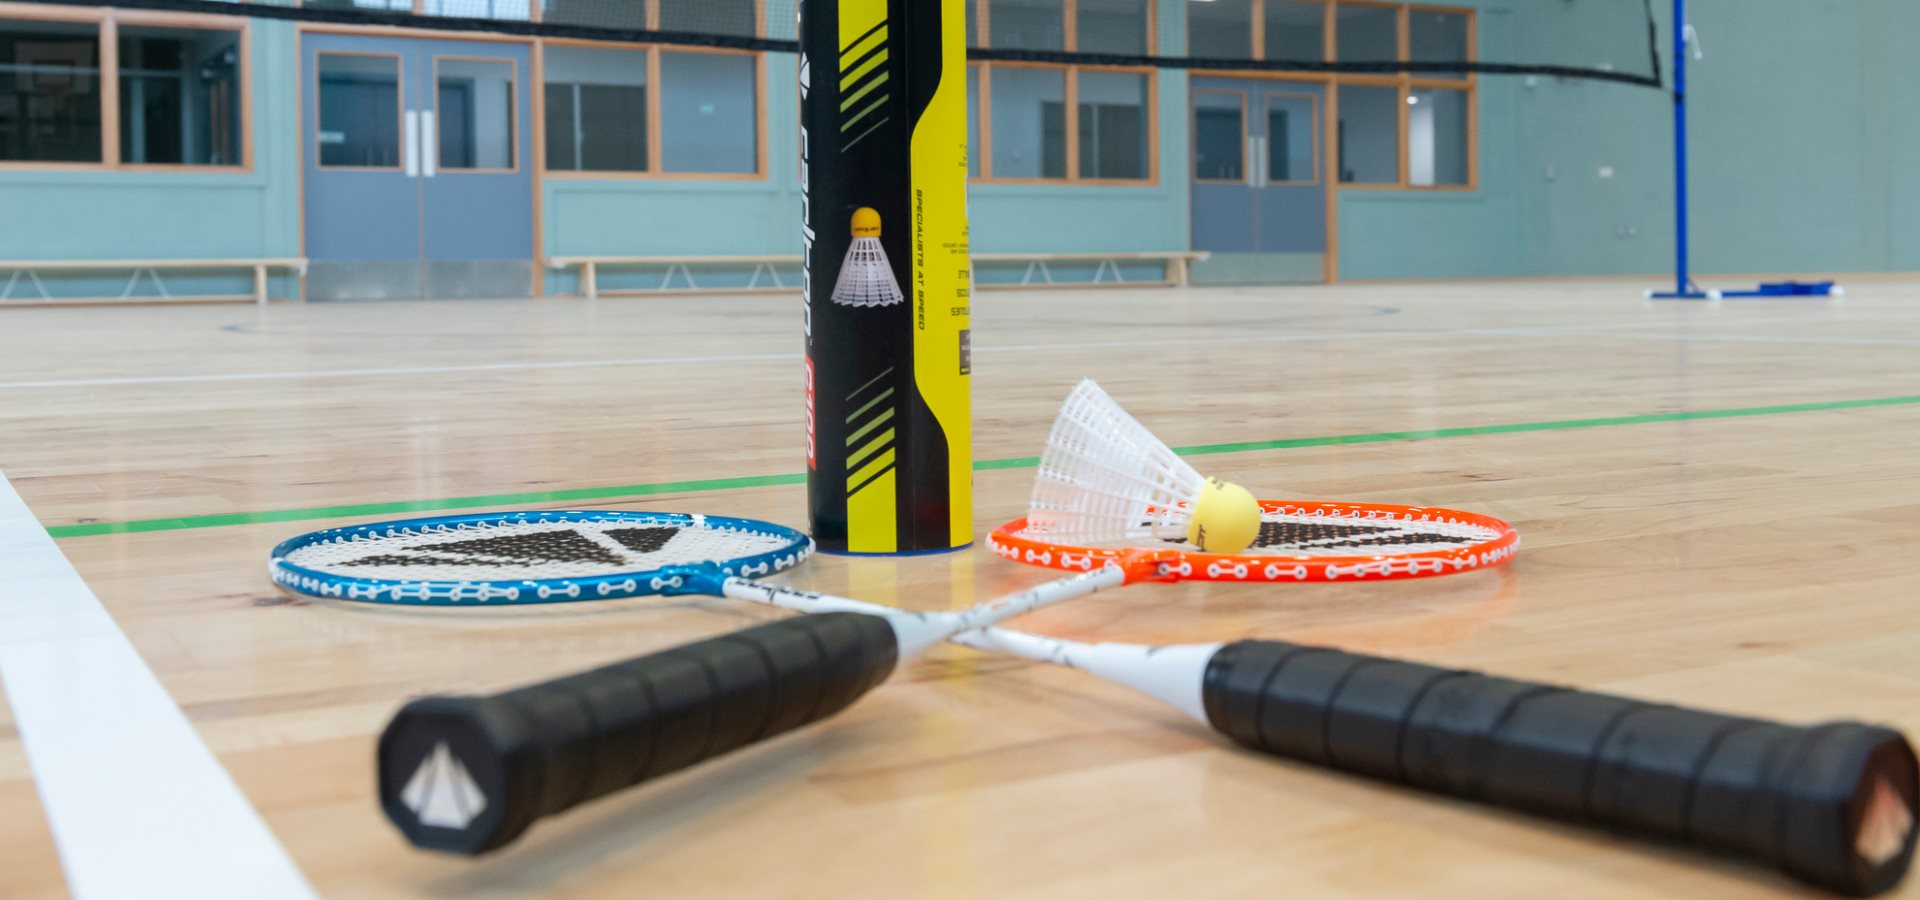 Badminton equipment in a badminton court